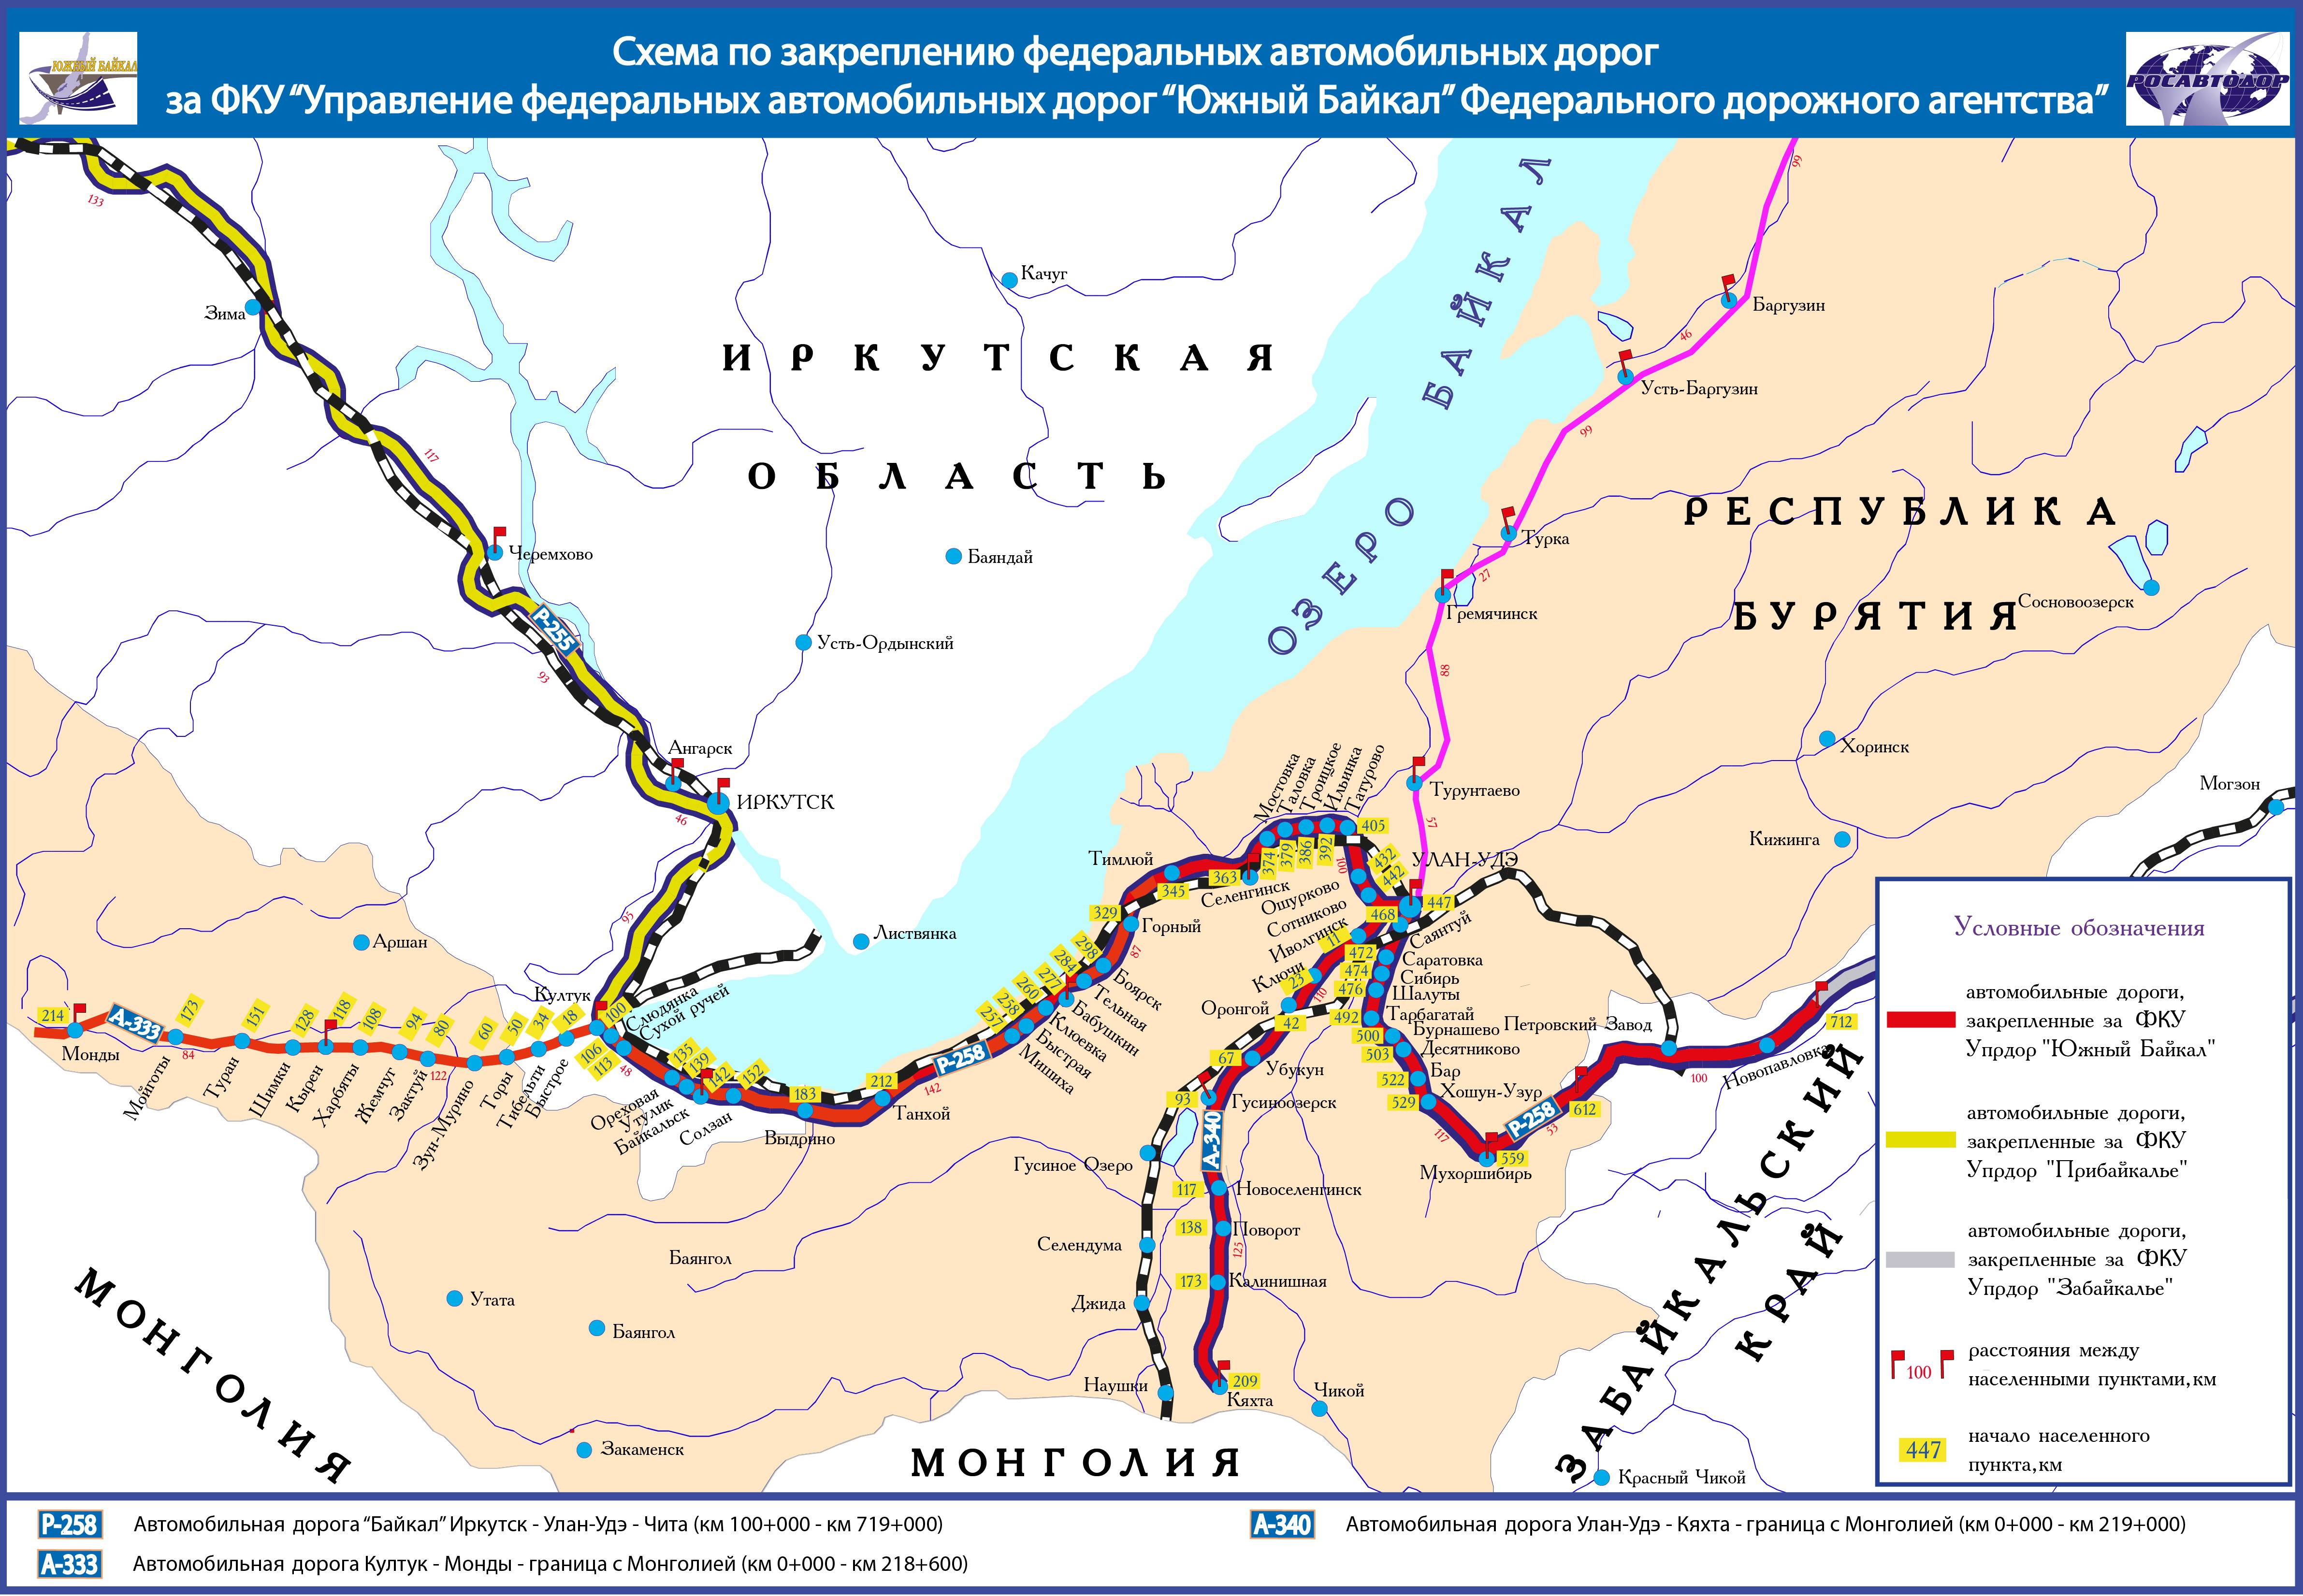 Восточно-сибирская железная дорога. схема дороги по регионам